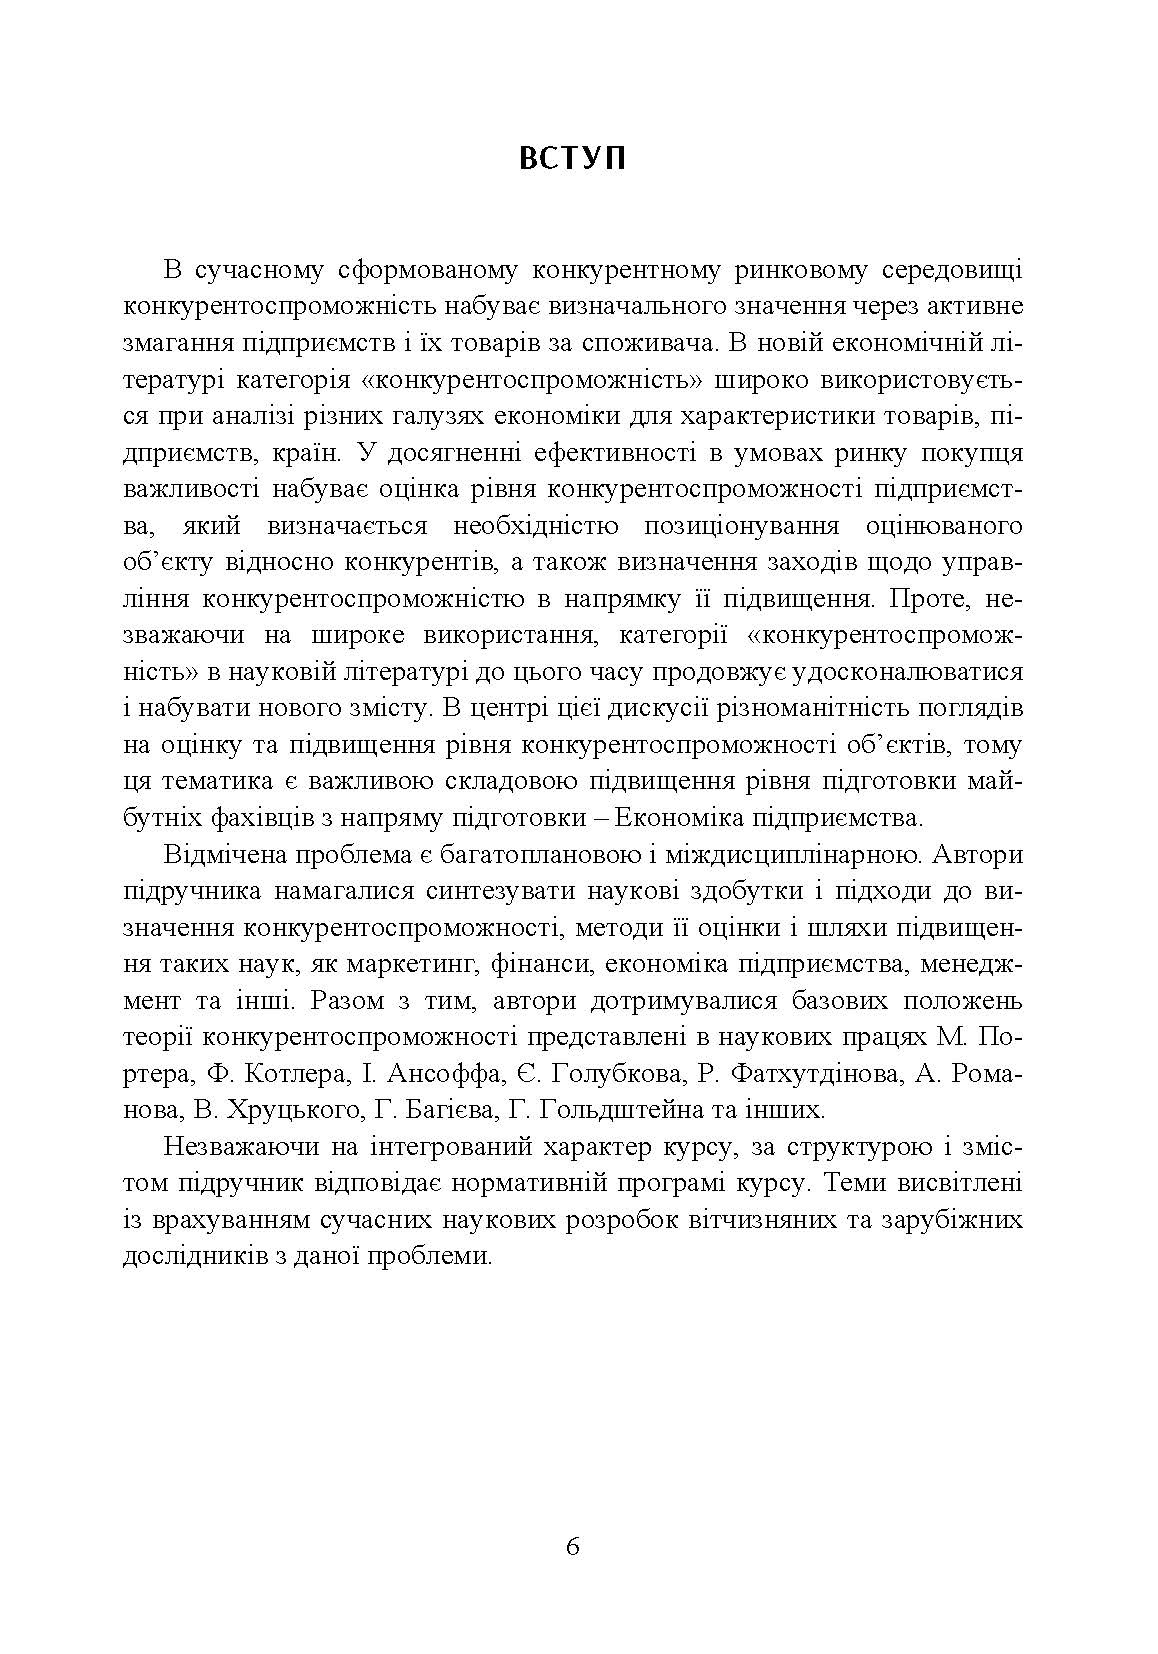 Конкурентоспроможність підприємства (2020 год)). Автор — П. І. Юхименко та ін. 